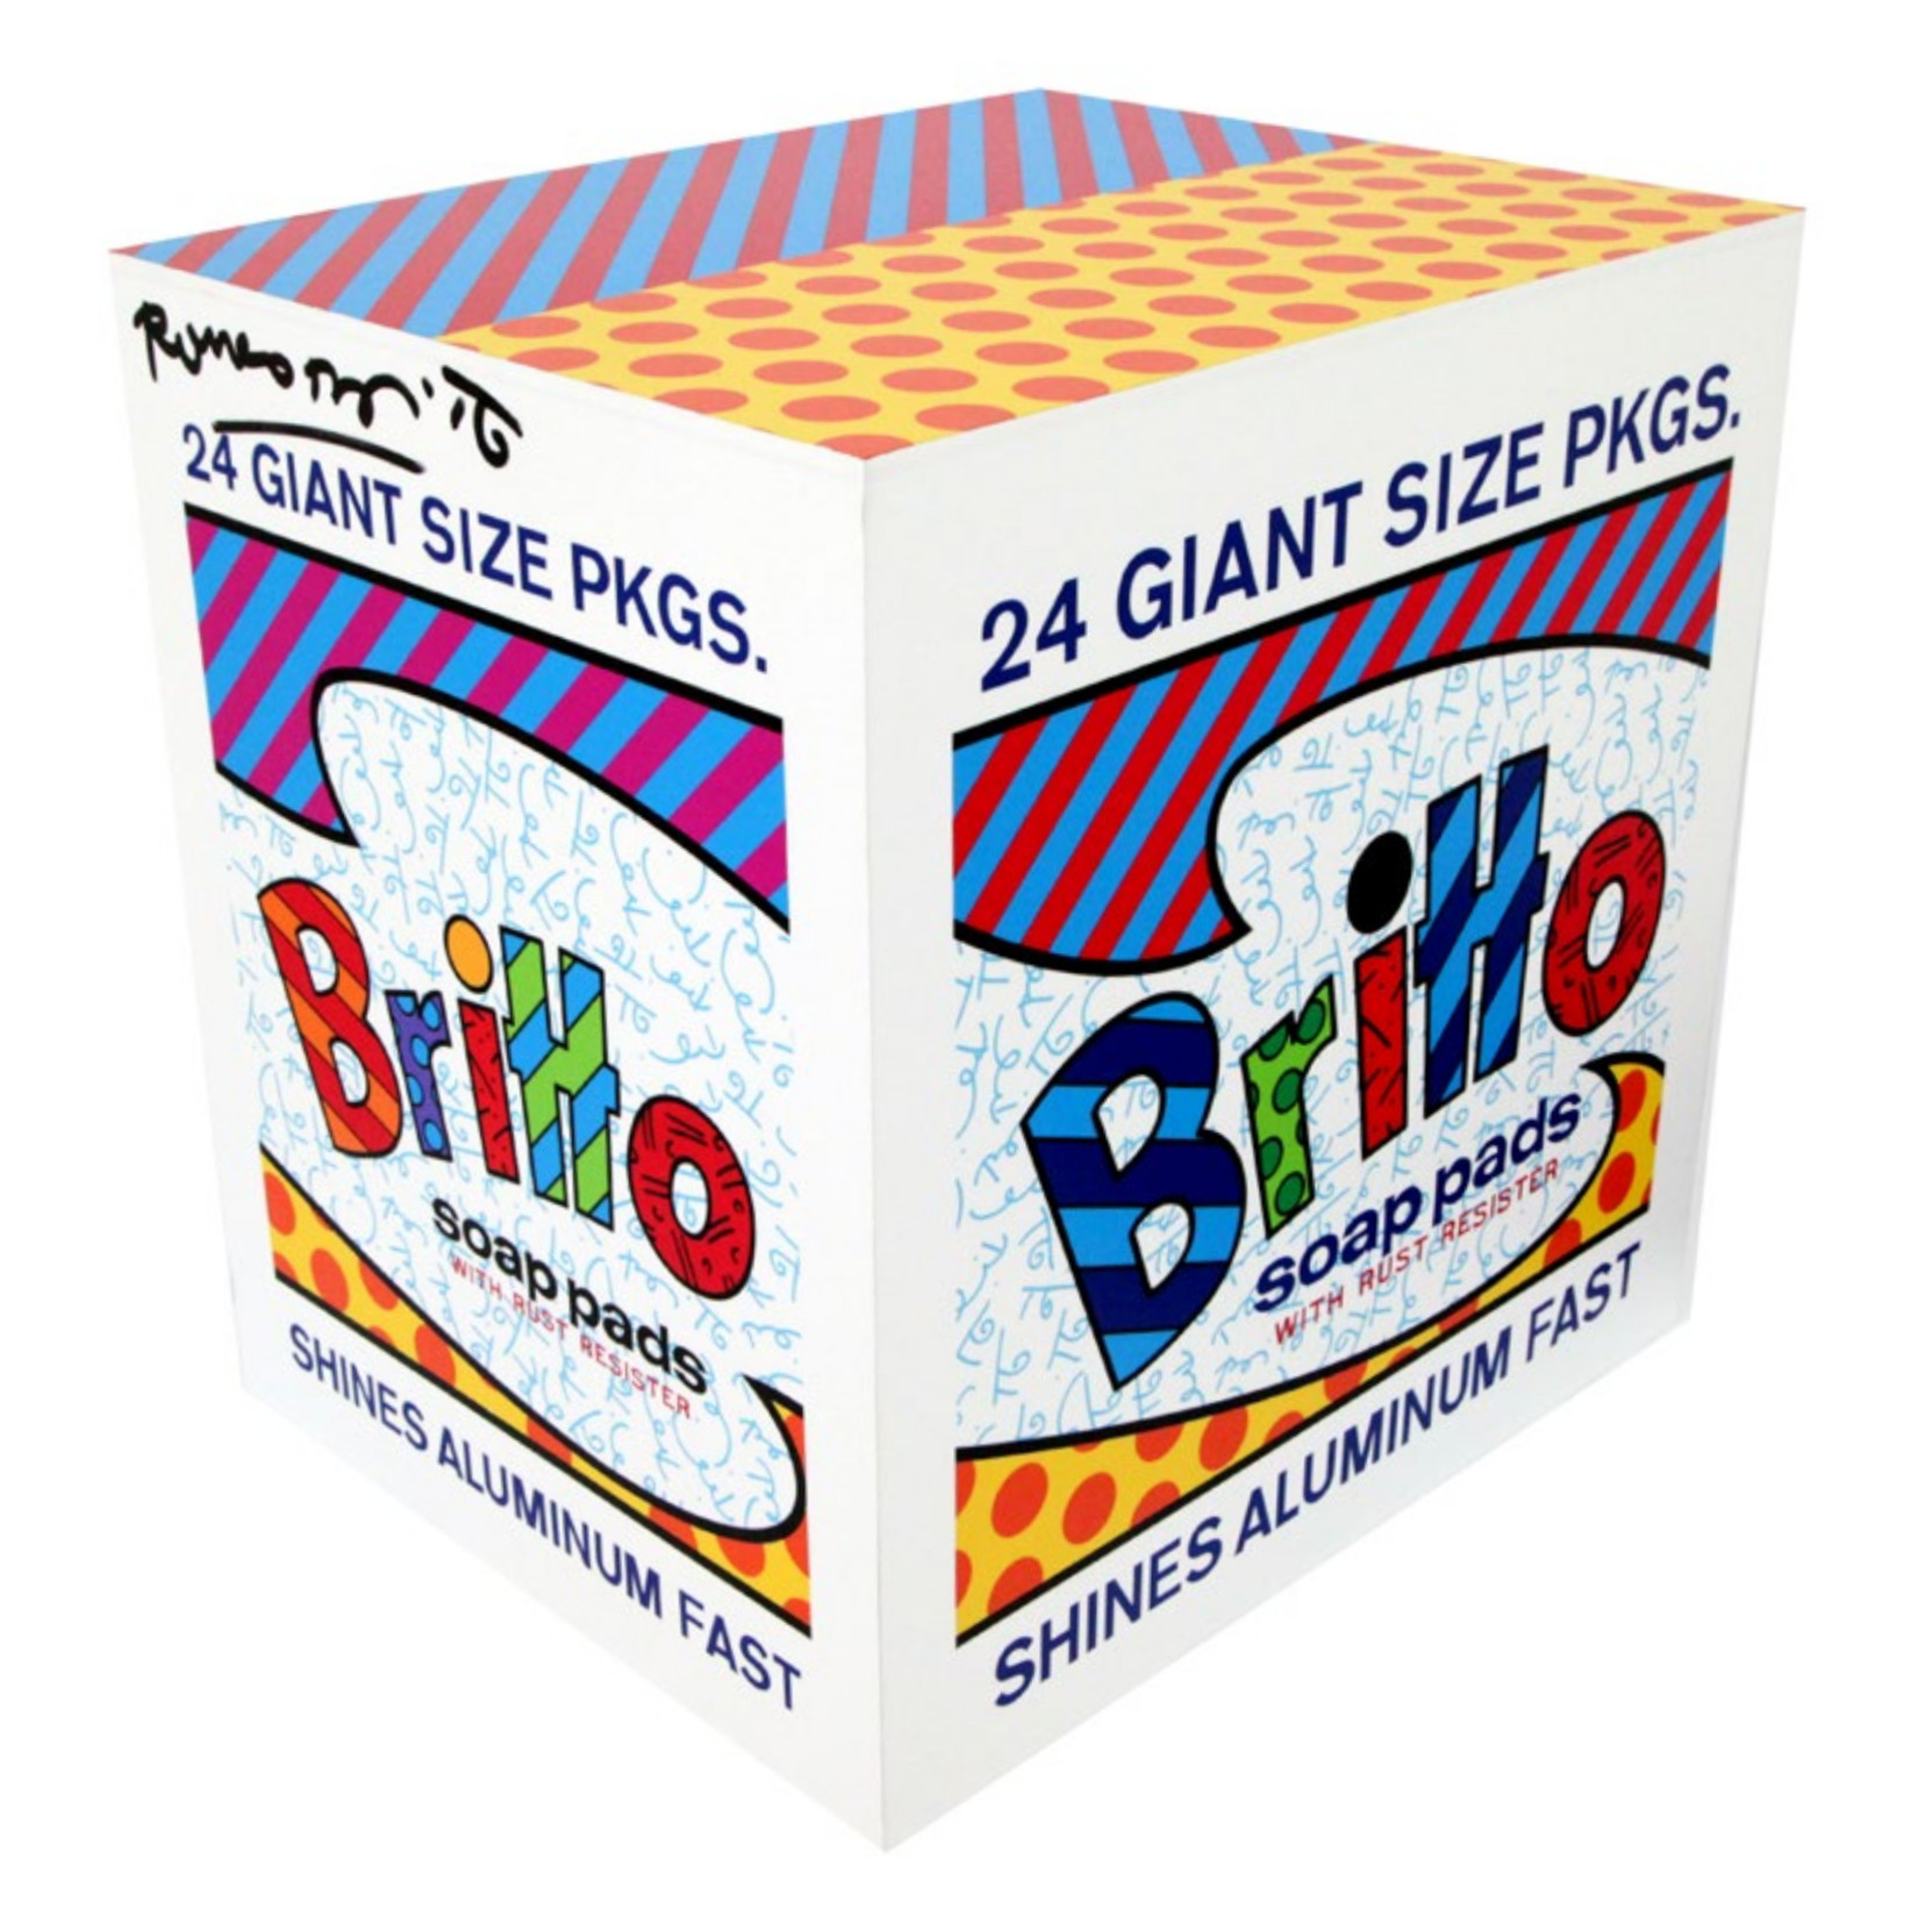 Britto Box by Romero Britto